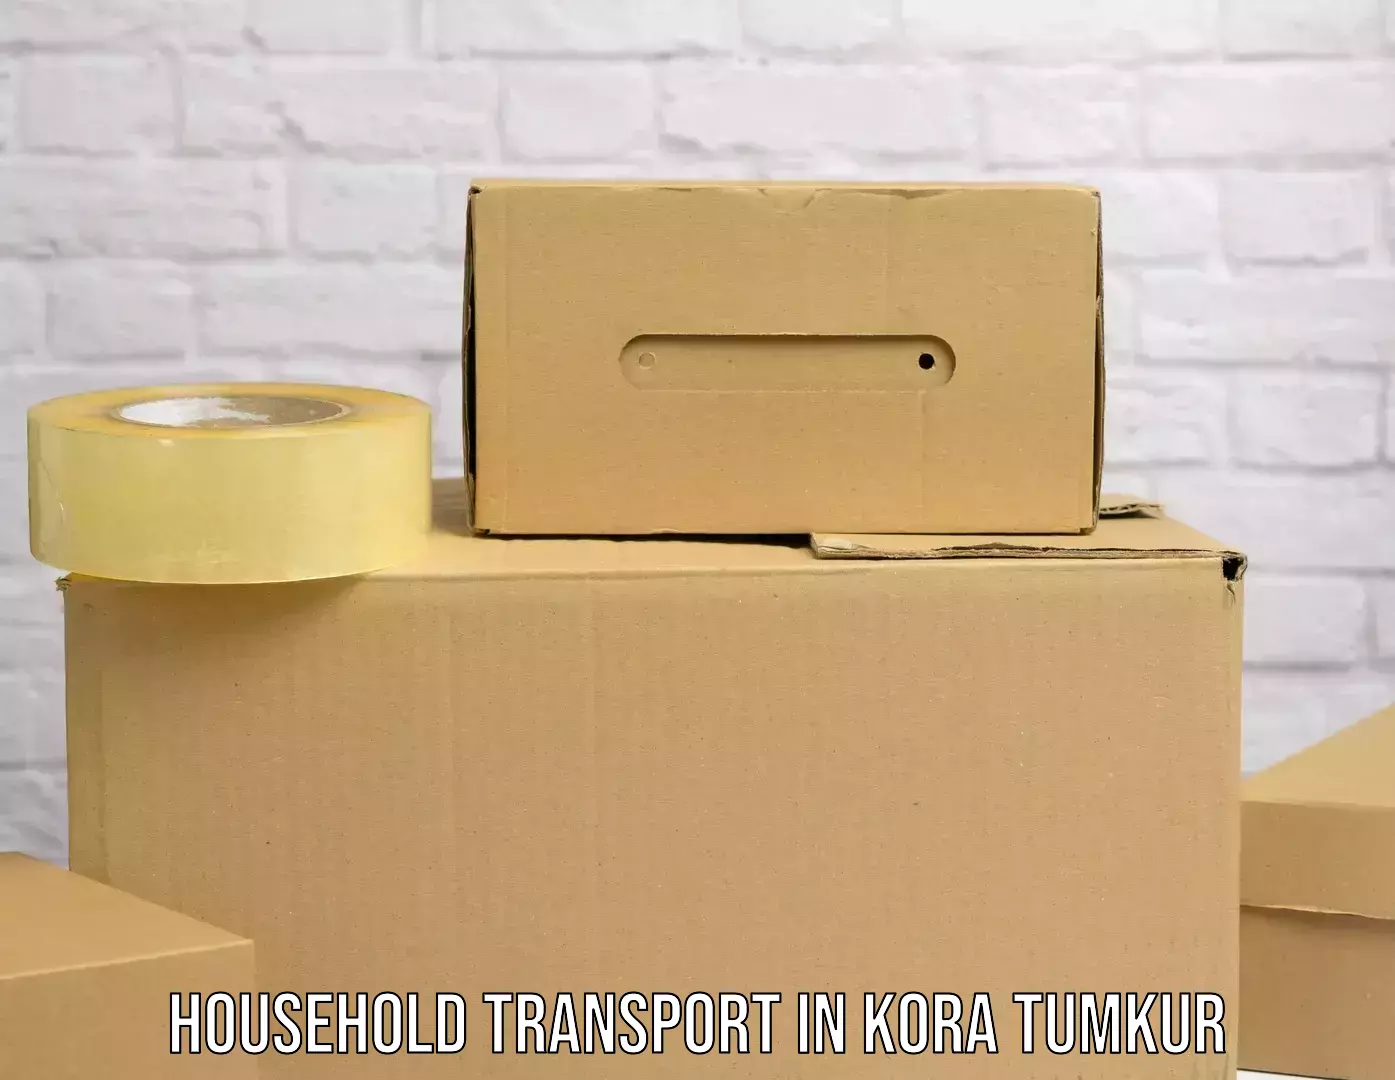 Skilled household transport in Kora Tumkur